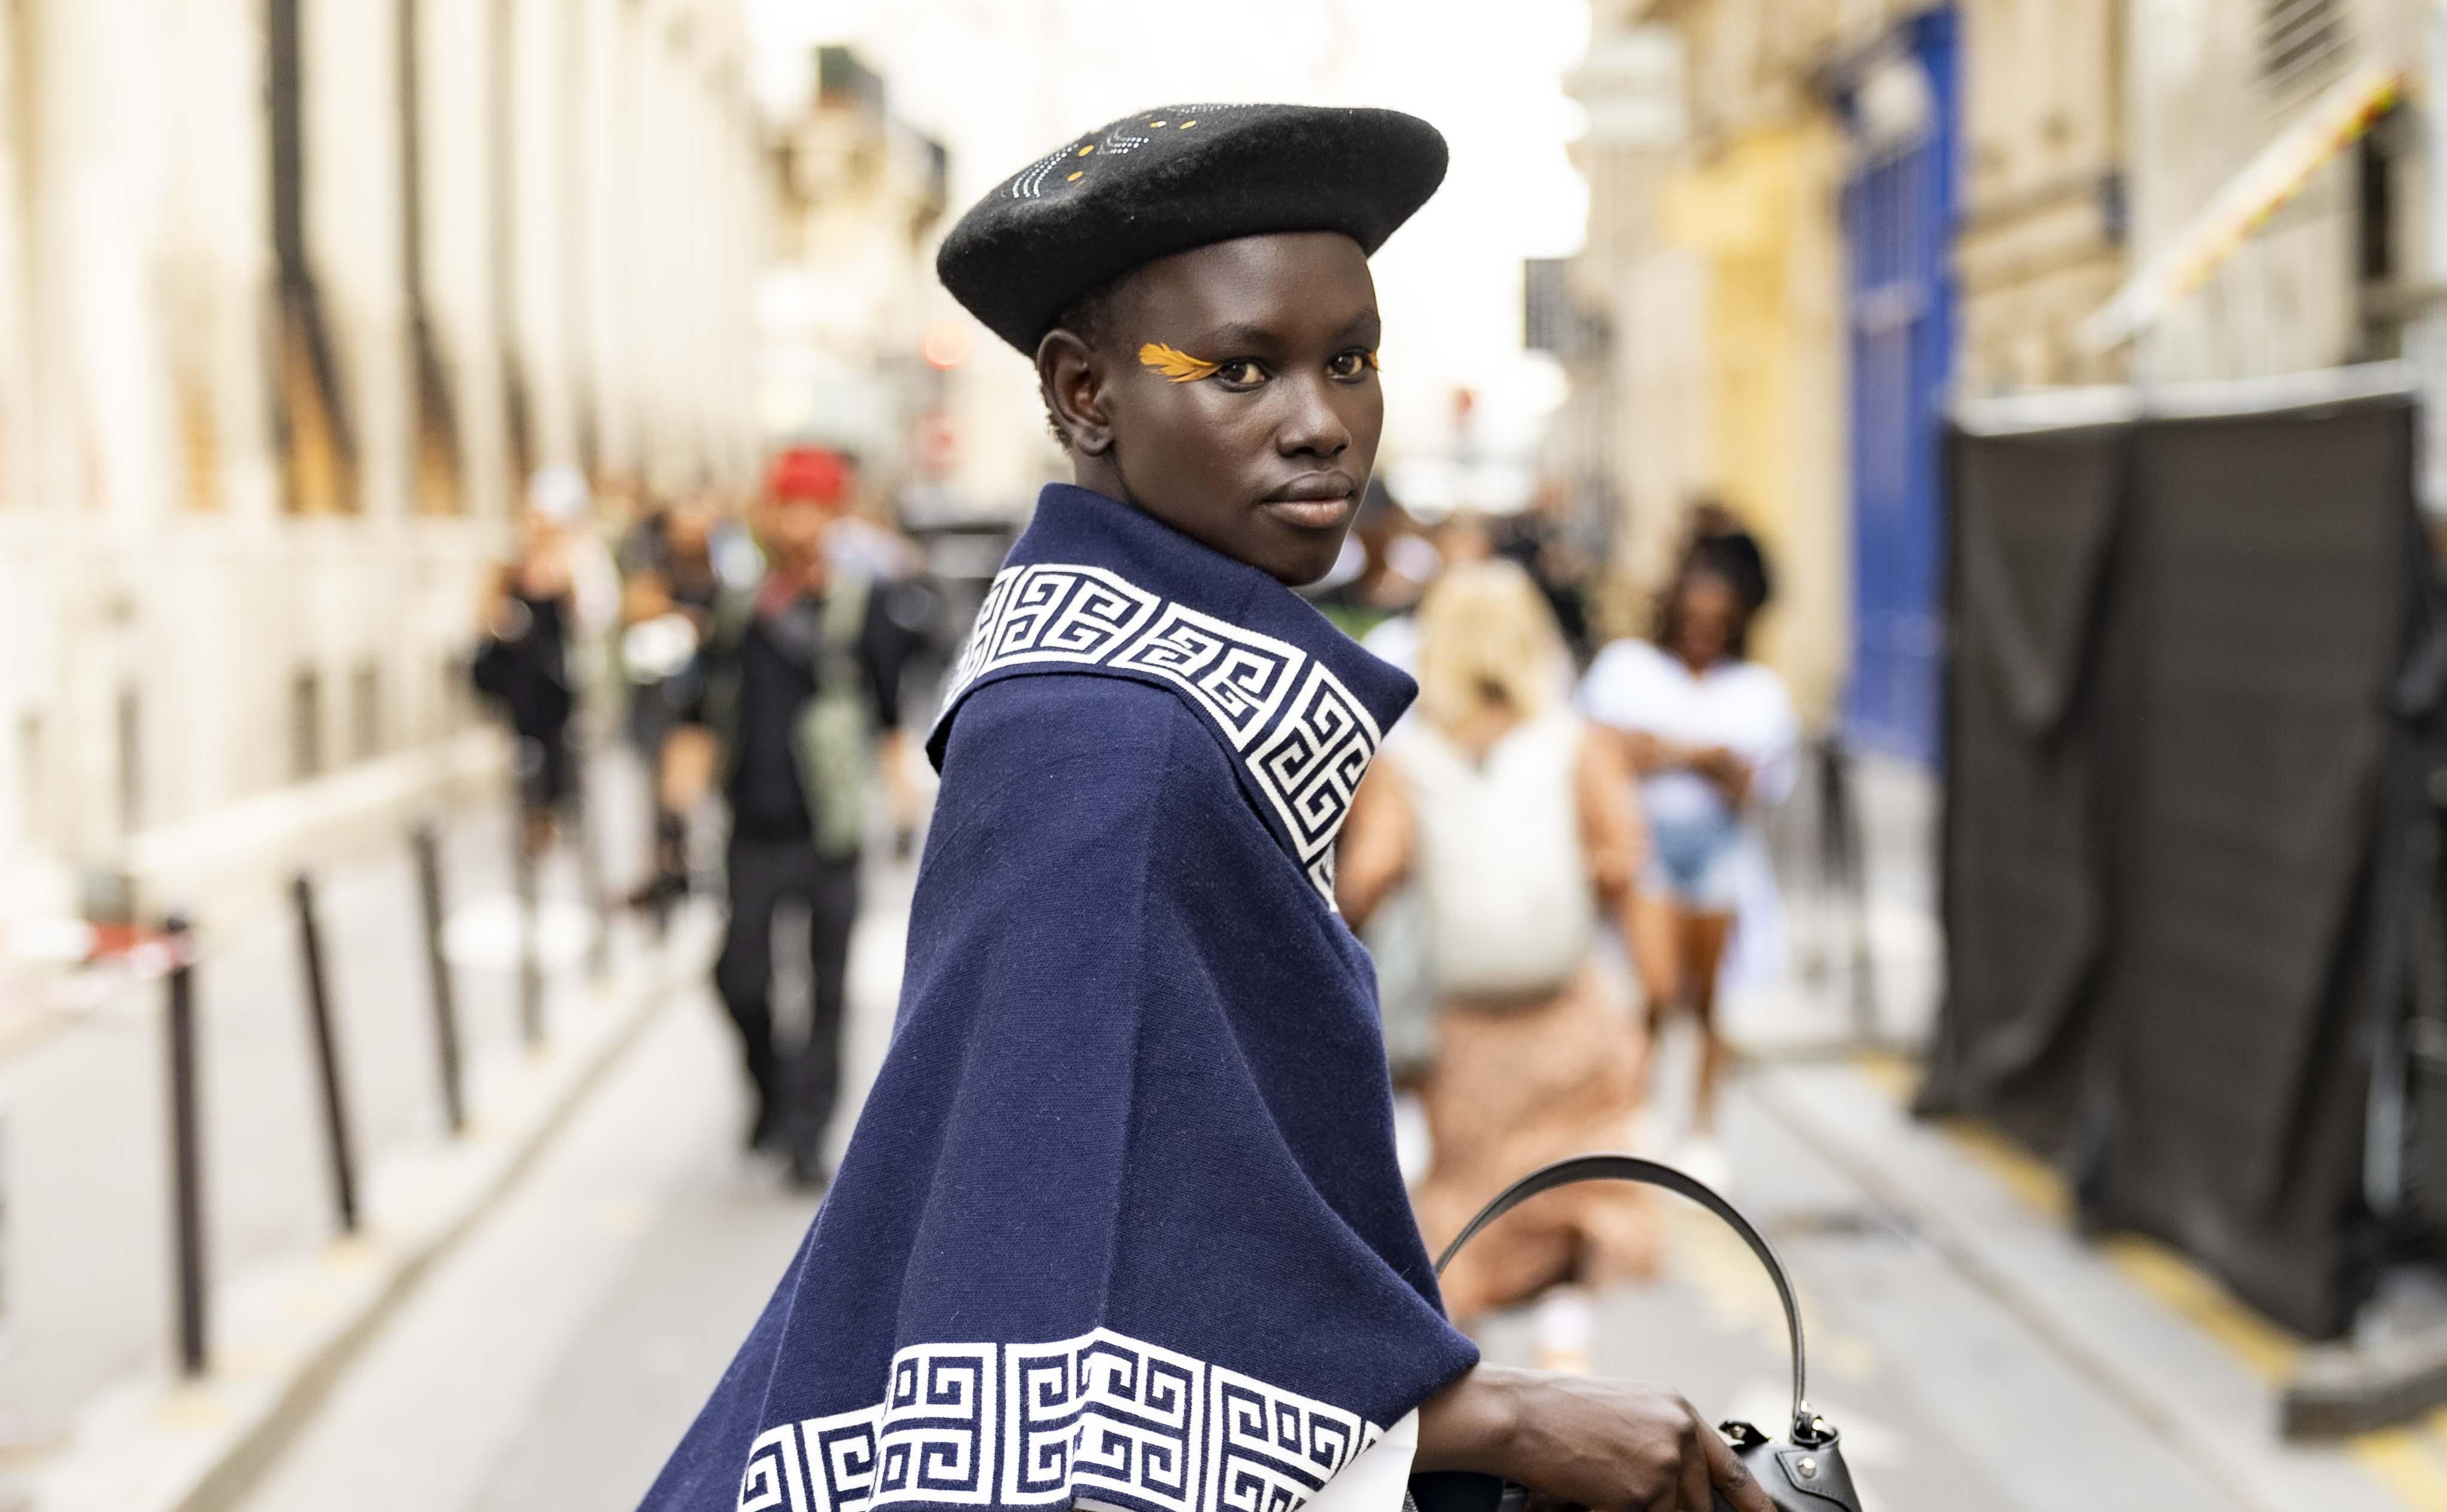 Pariškim ulicama prekrasna manekenka prošetala trendi kombinaciju u kojoj je spojila nespojivo